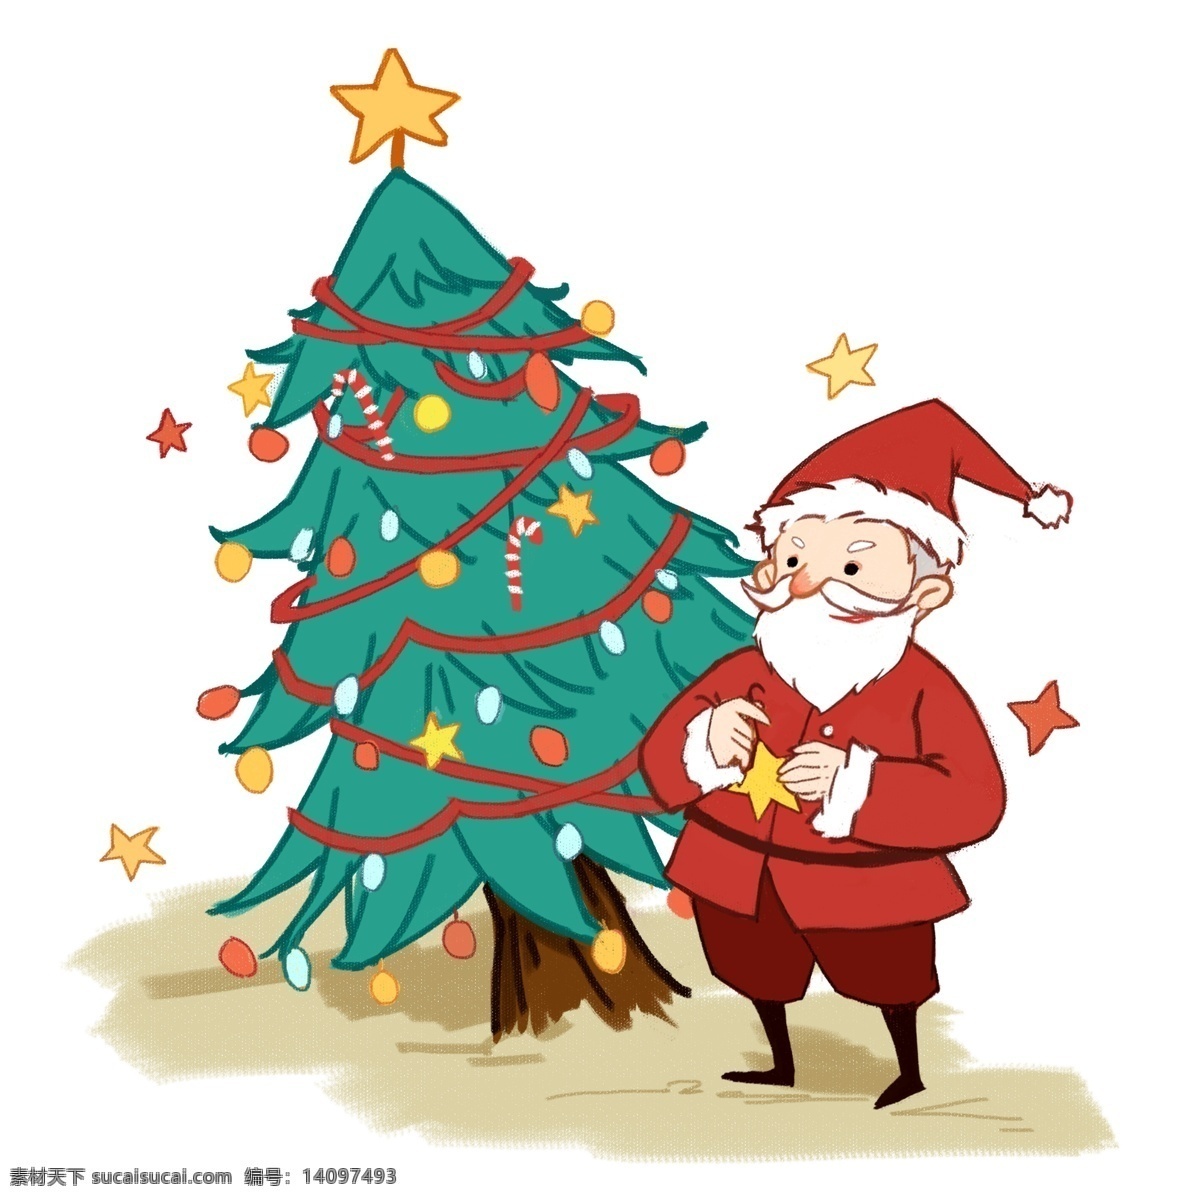 圣诞节 站 圣诞树 旁边 圣诞老人 圣诞 节日 男孩女孩系列 礼物 传统习俗 可爱 卡通风 童话风格 插画 壁纸 装饰画